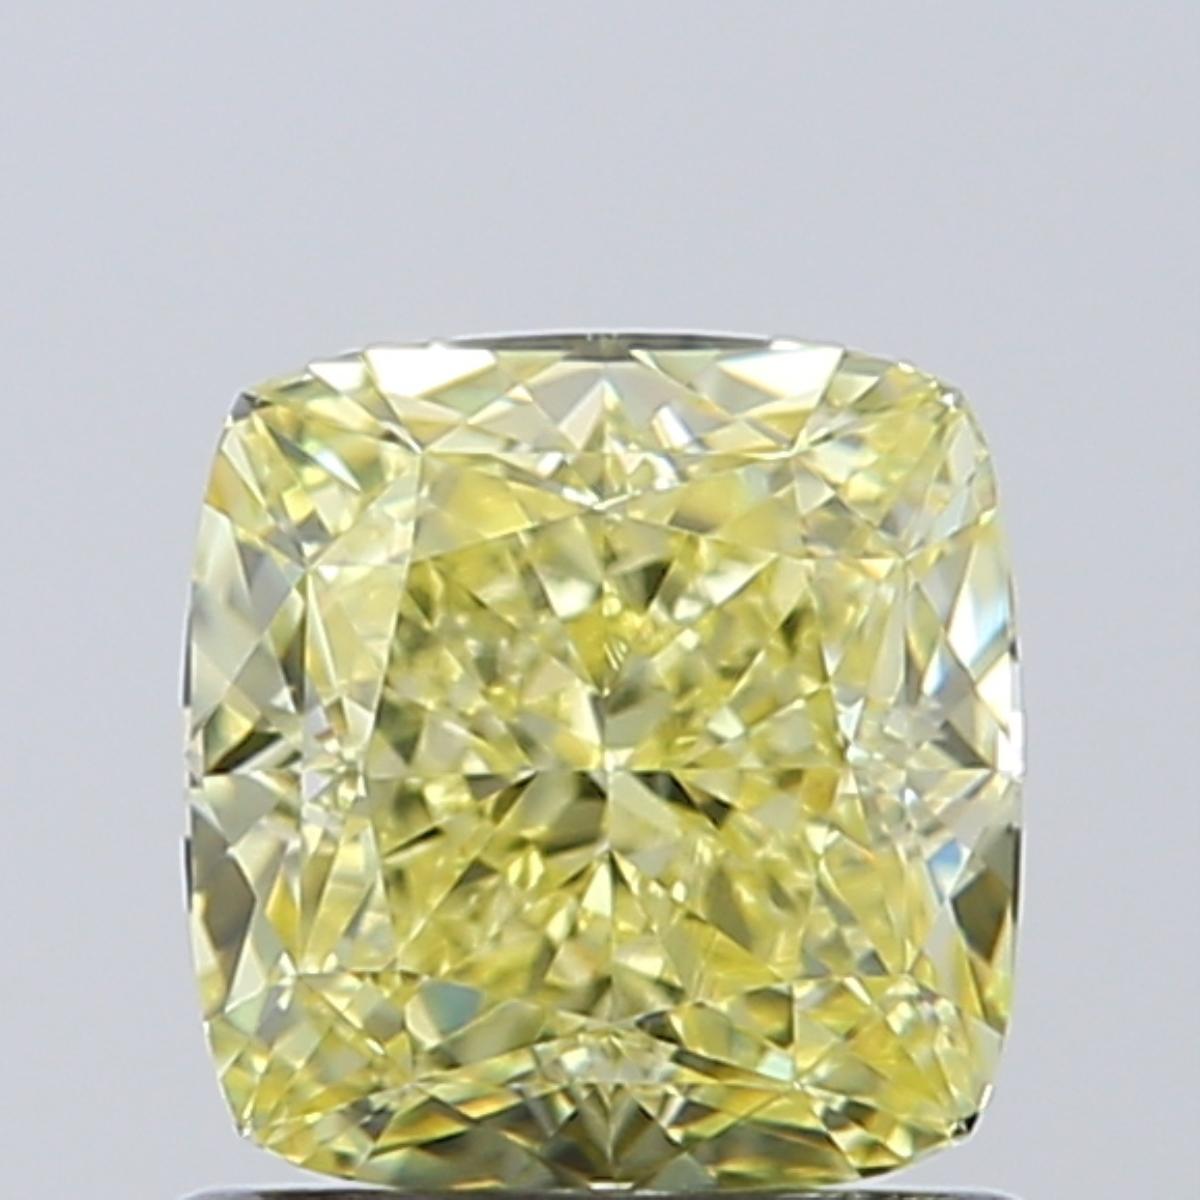 Diamant naturel certifié GIA de 1,00-1,05 carat VVS1, de couleur jaune vif, taille coussin

Des diamants de couleur jaune parfaite pour des cadeaux parfaits.

A.C.C. :
Certificat : GIA
Carat : 1.00-1.05ct
Couleur : Naturel Jaune fantaisie
Clarté :